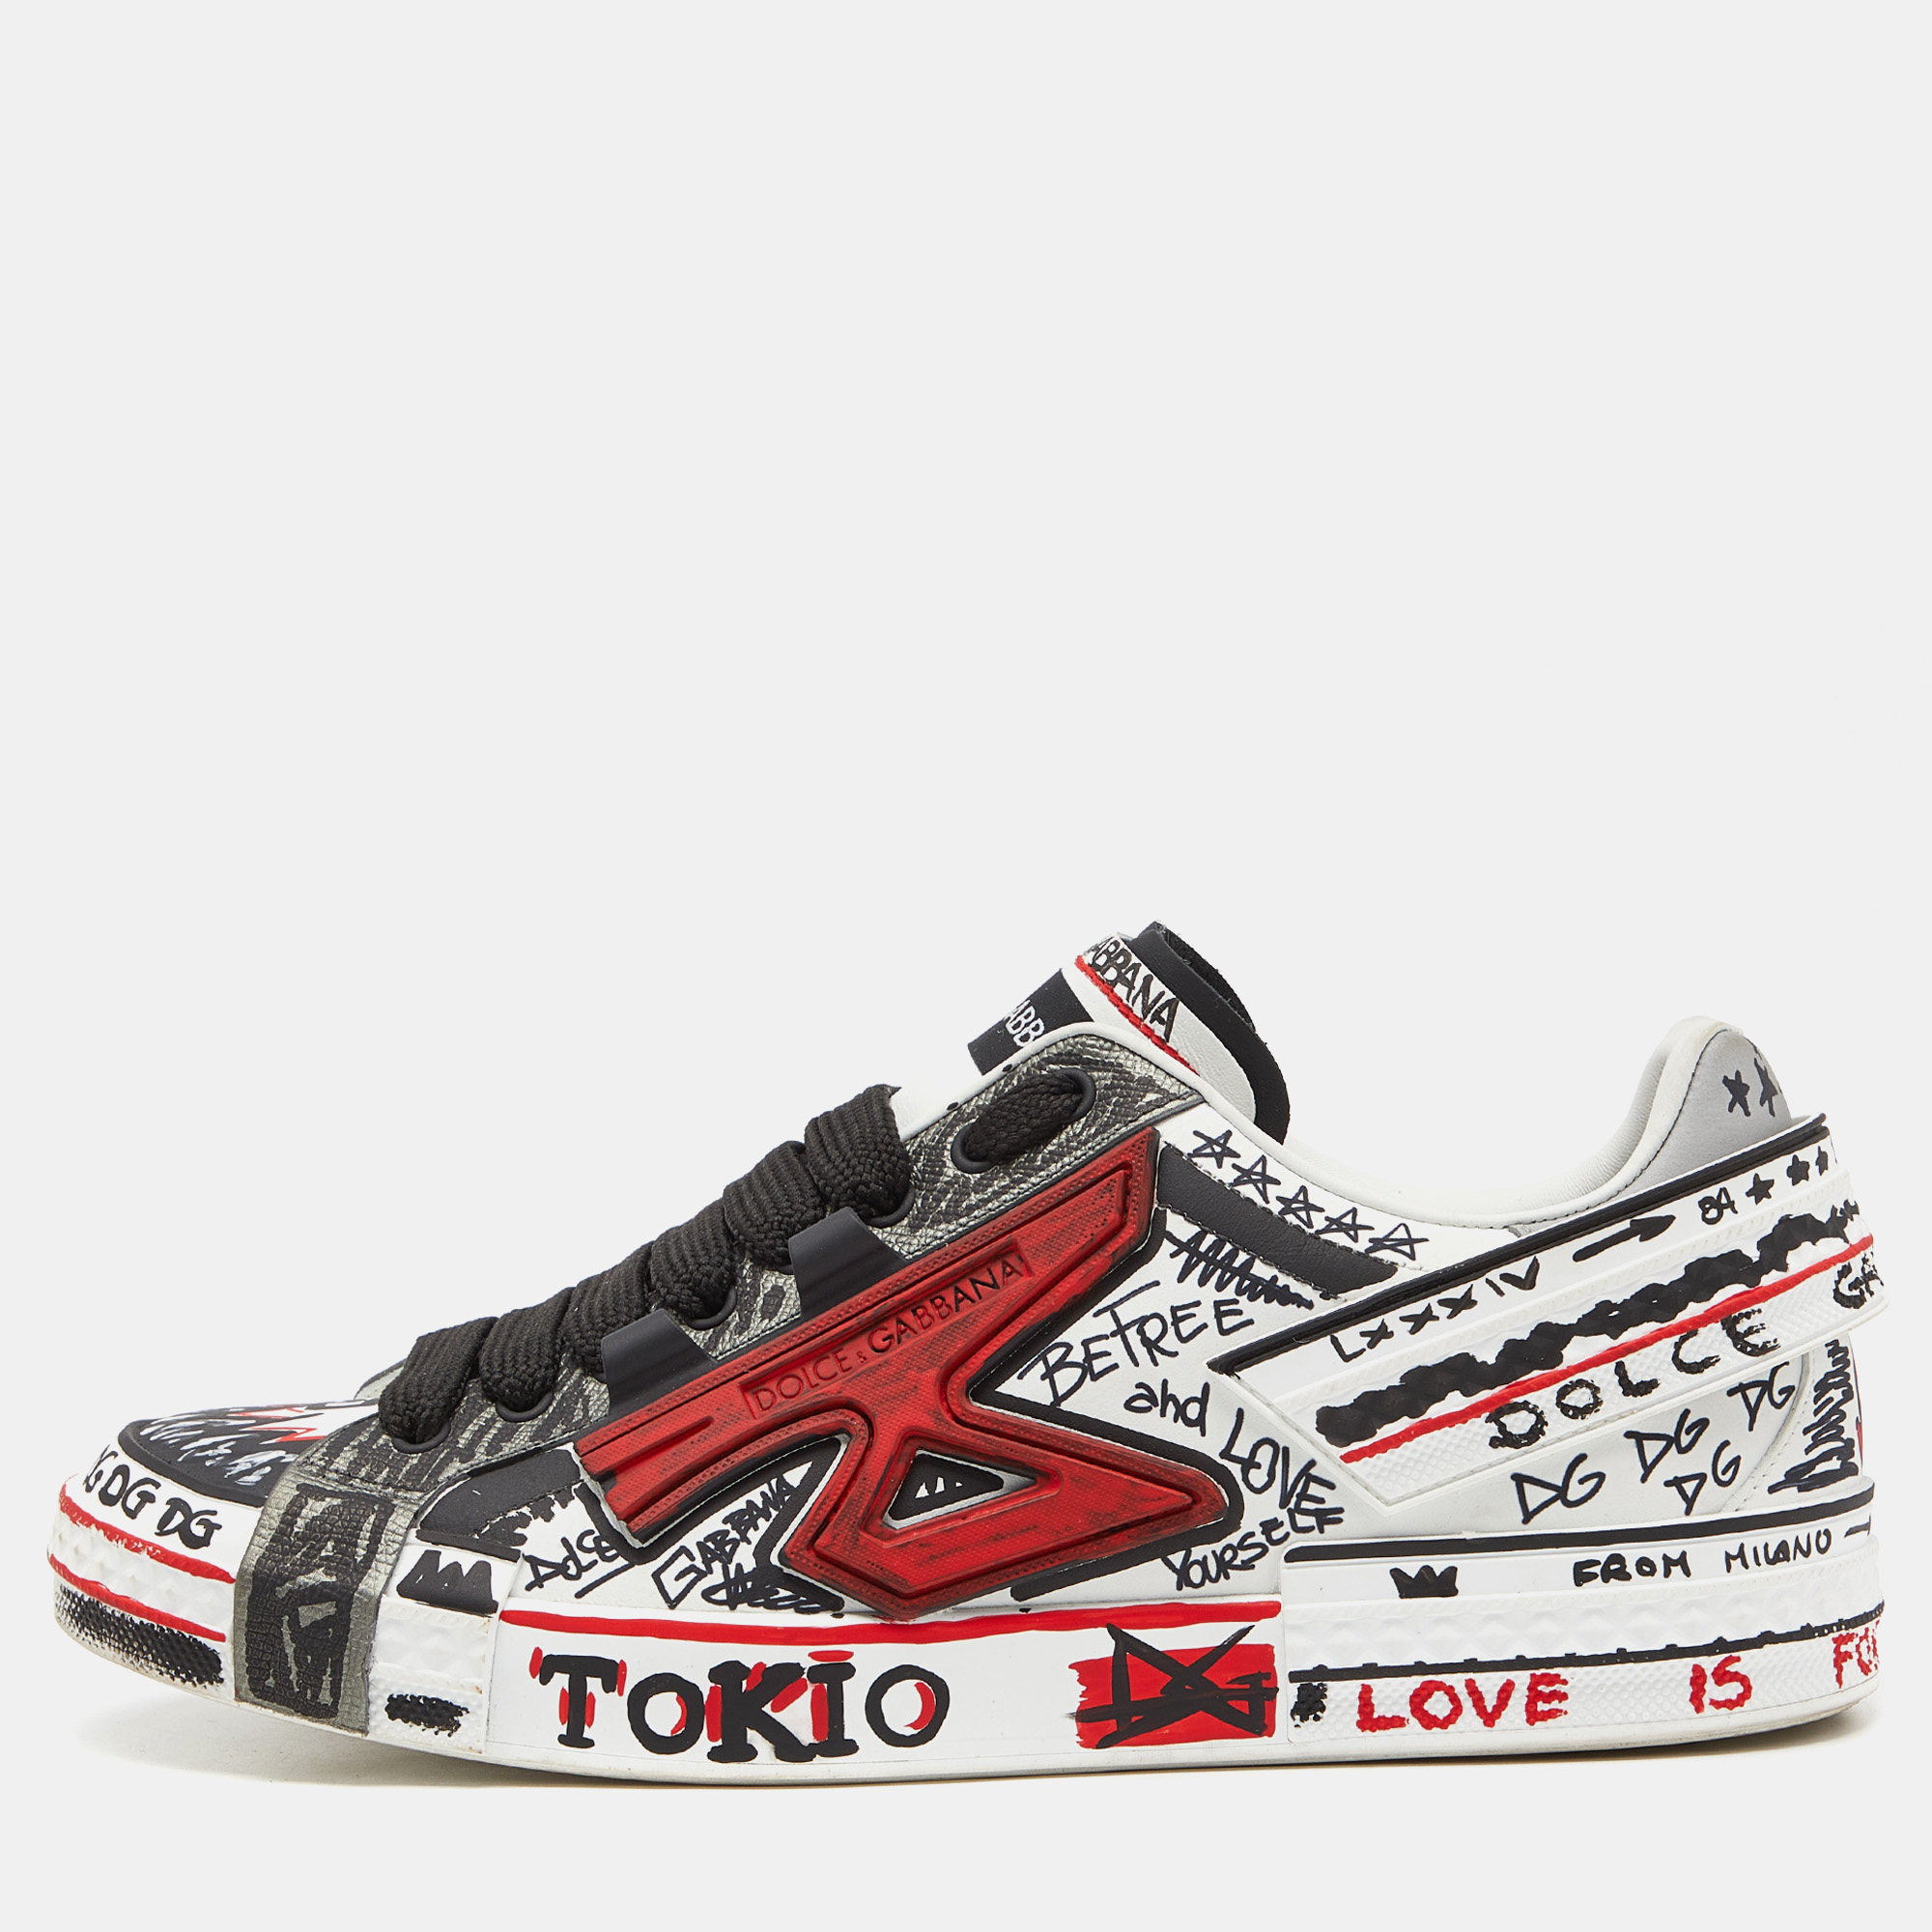 Pre-owned Dolce & Gabbana Tricolor Leather Graffiti Print Portofino Sneakers Size 43 In White